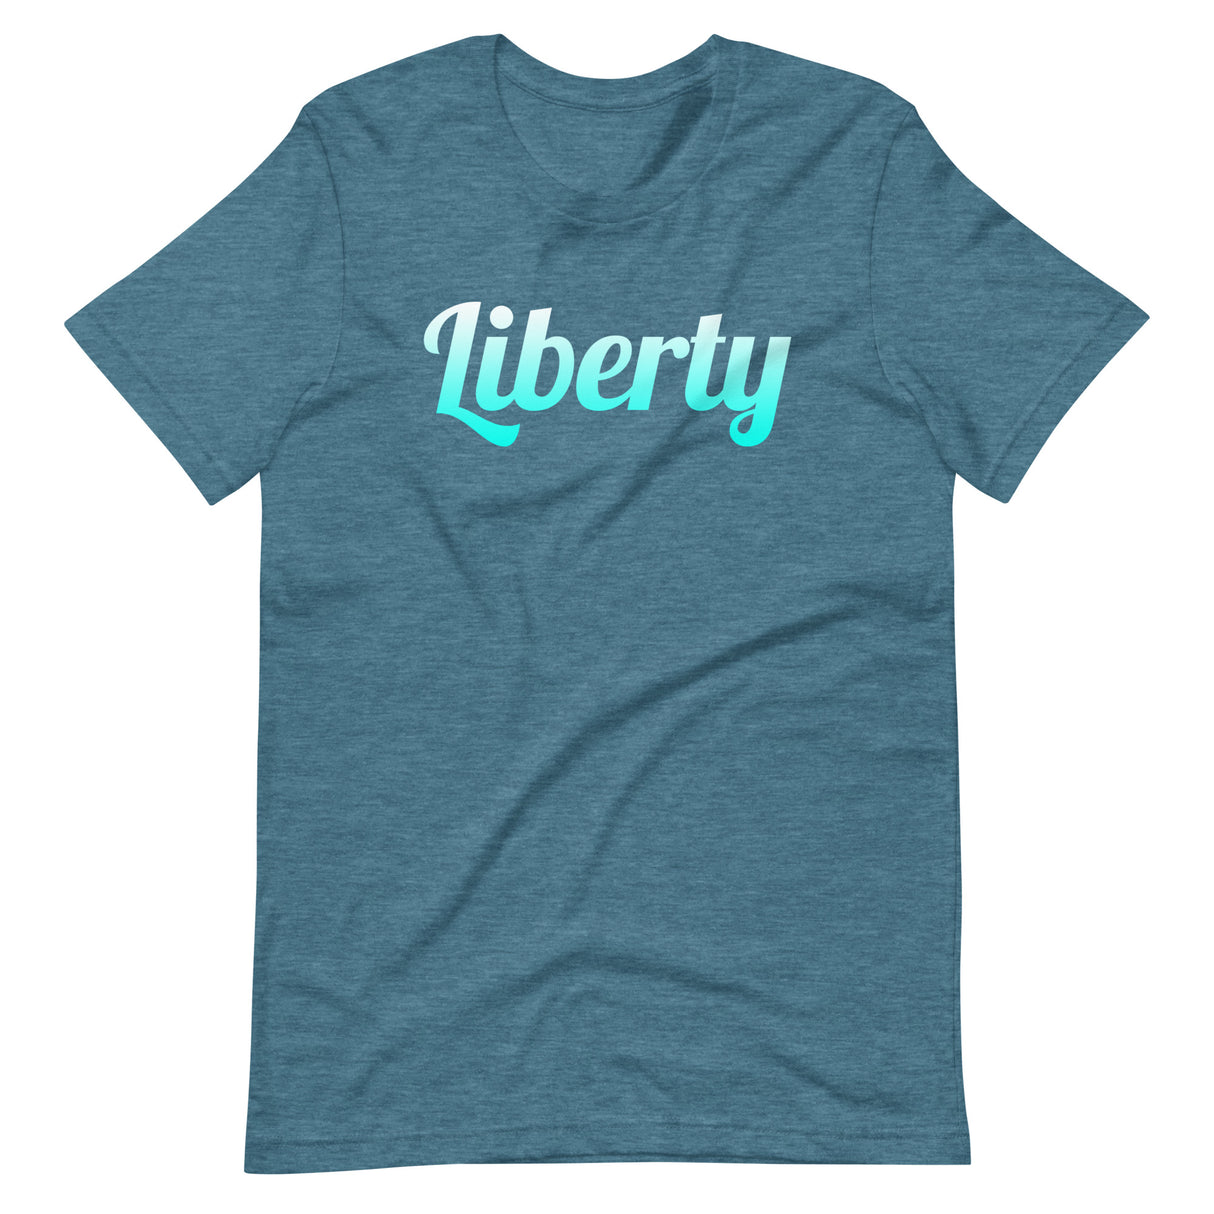 Liberty Shirt - Libertarian Country